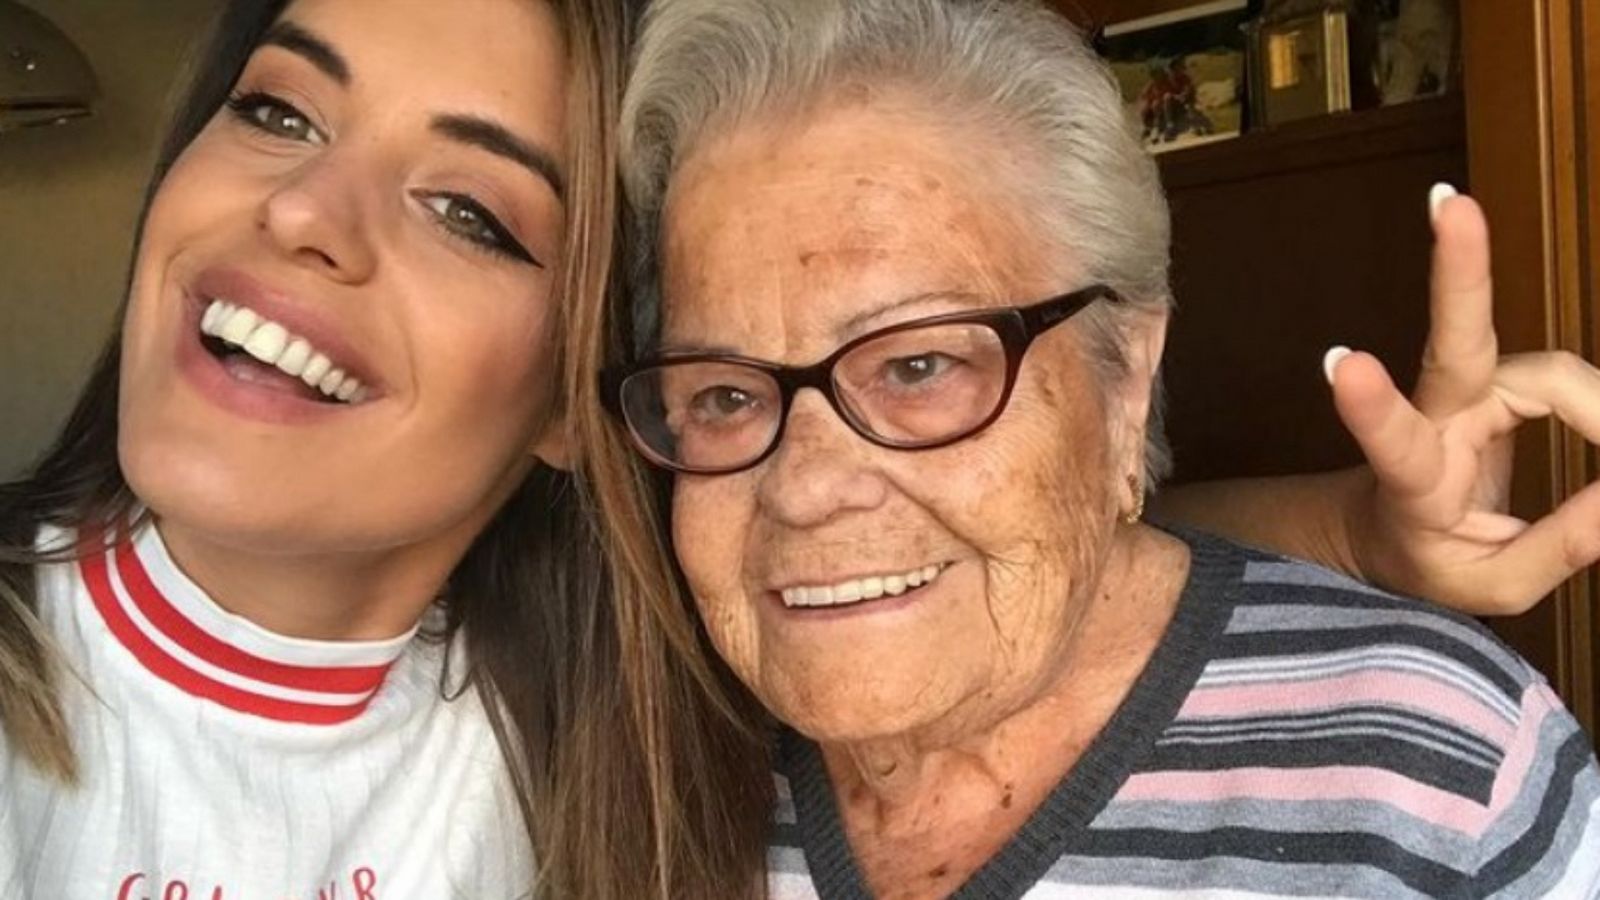 La emotiva despedida de Dulceida tras perder a su abuela: "Debería ser eterna"